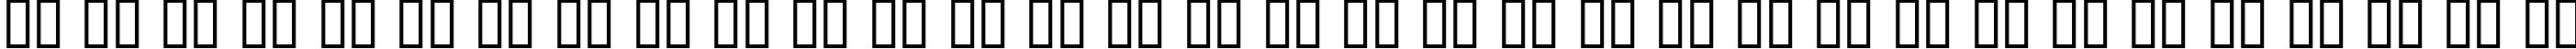 Пример написания русского алфавита шрифтом Dumbledor 3 Outline